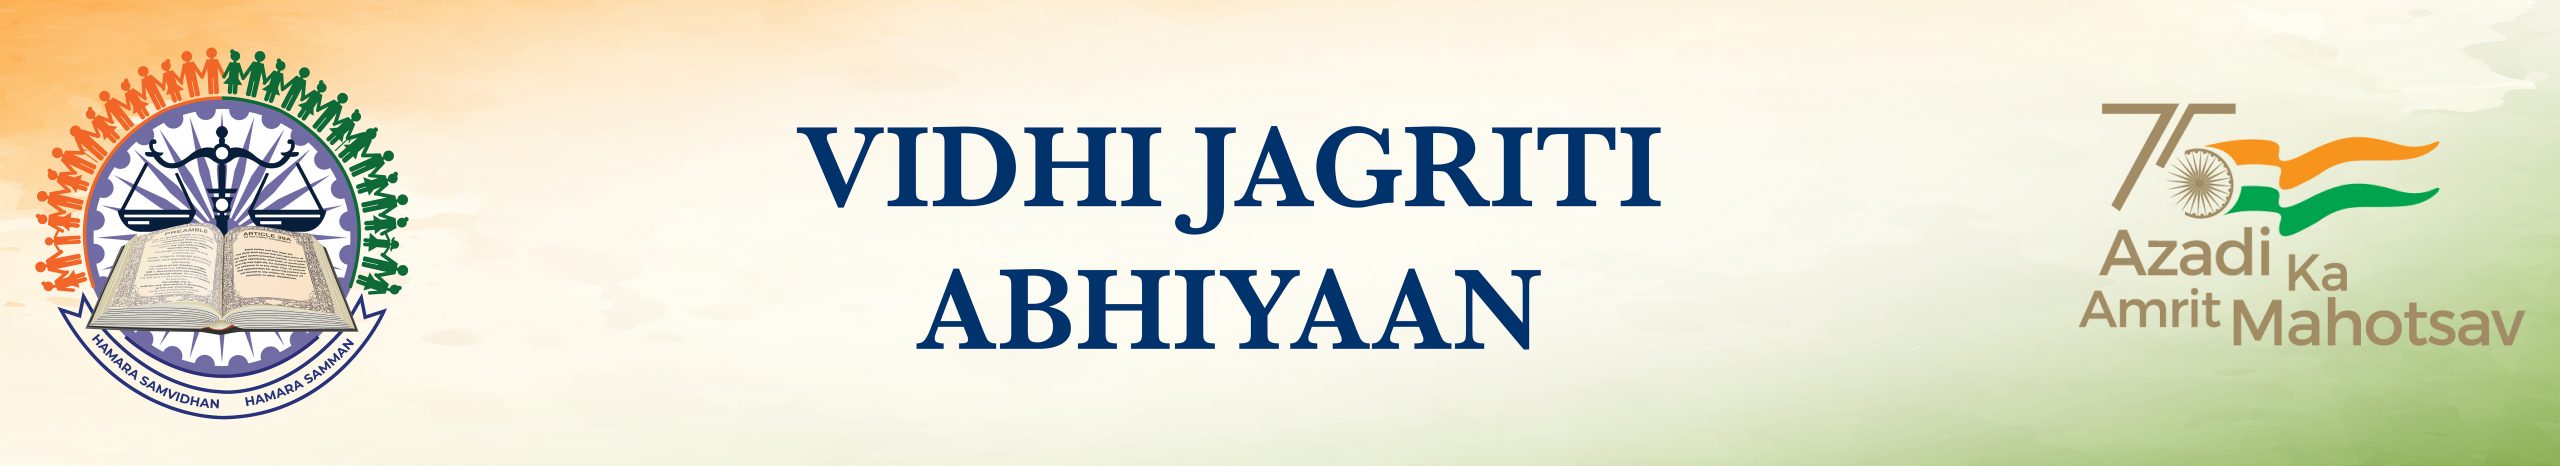 Vidhi Jagrithi Abhiyan Border